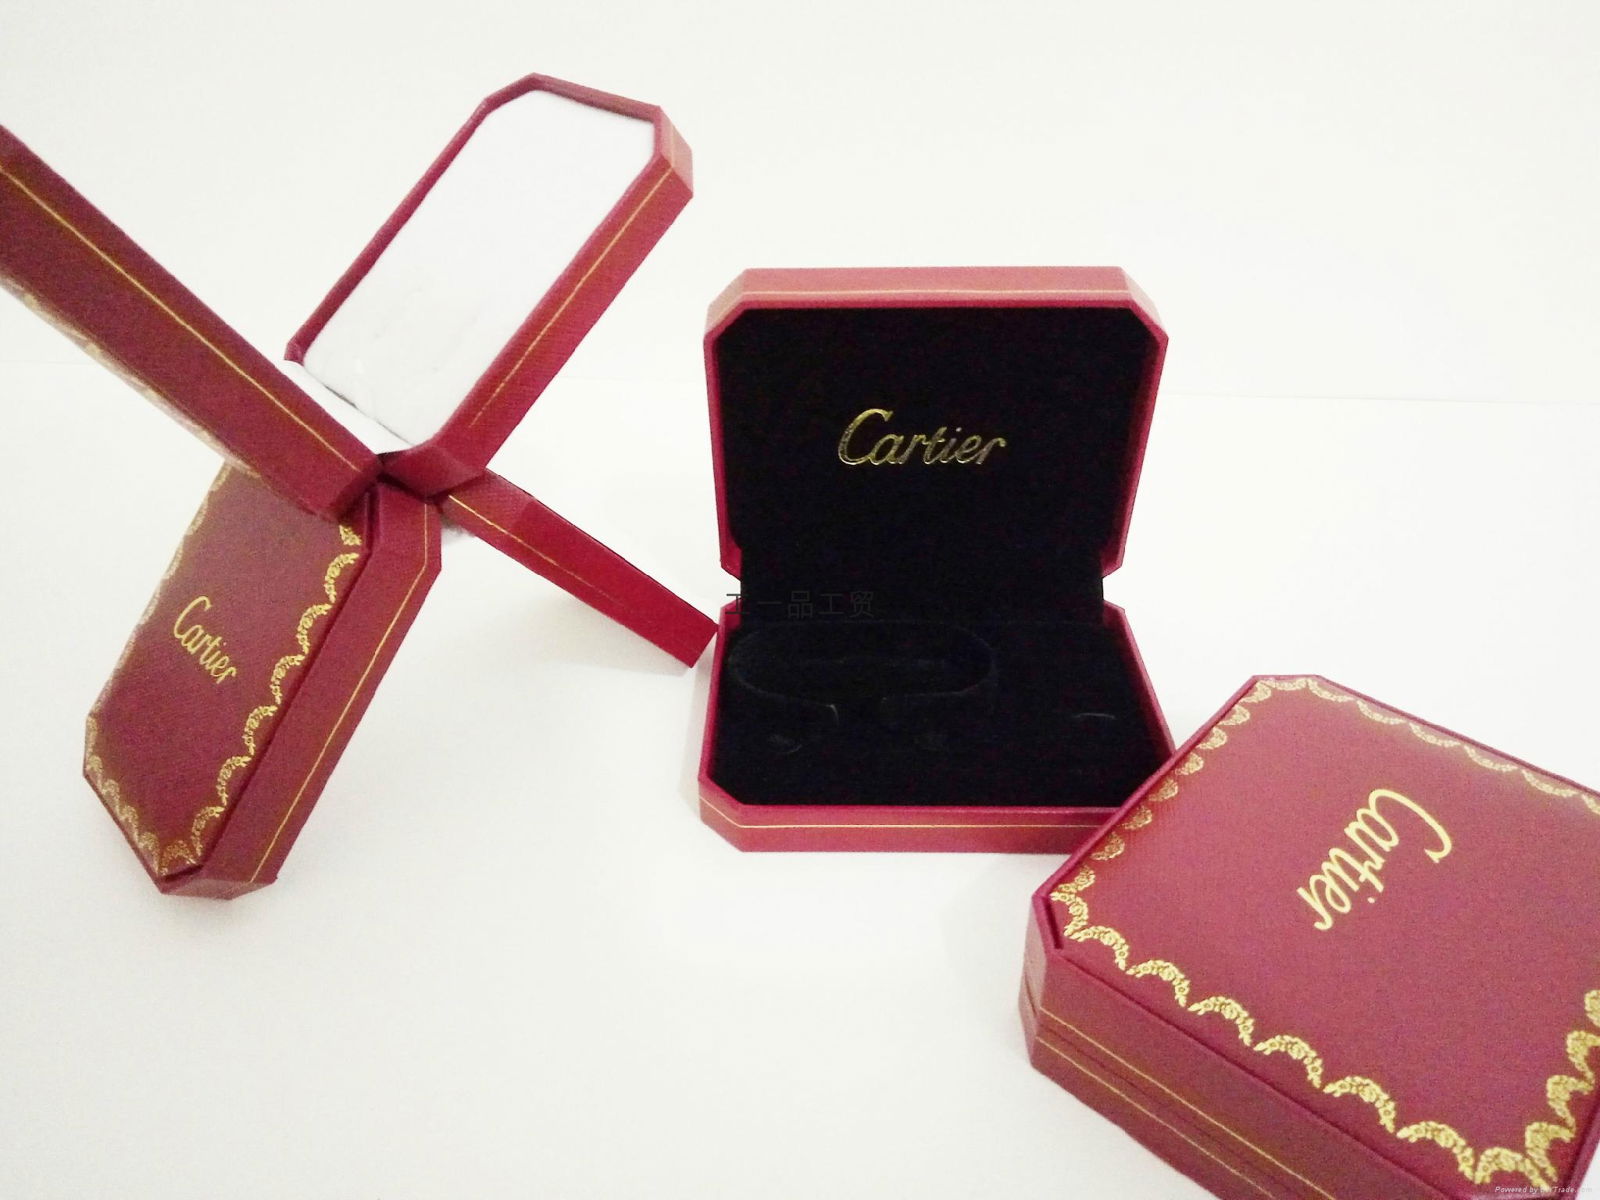 Cartier star jewelry box 3